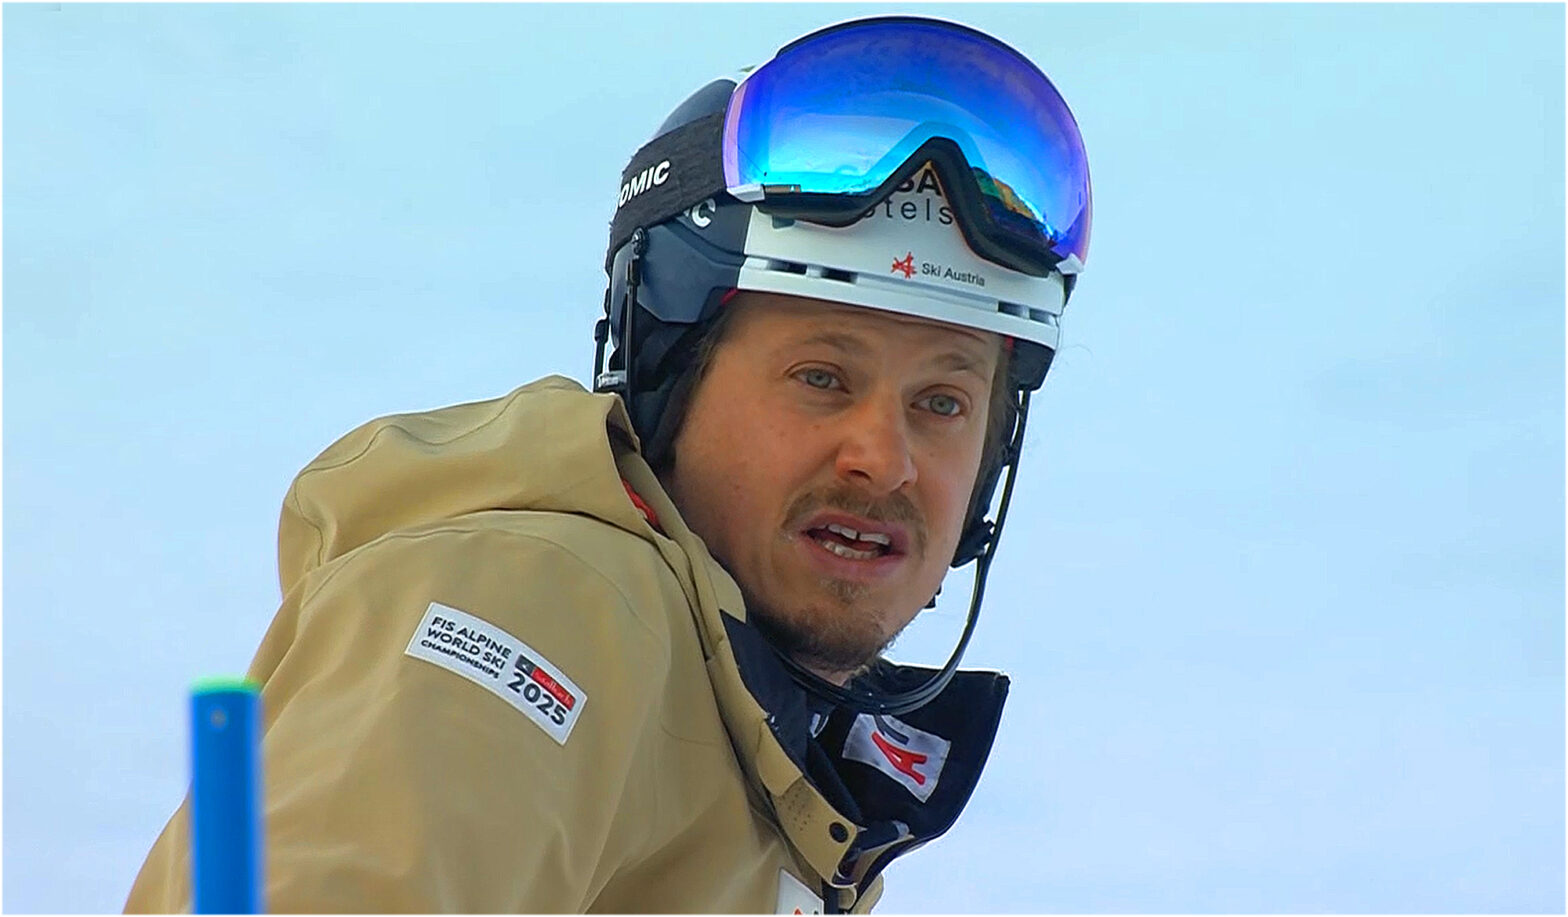 Manuel Feller: Kritische Sicht auf den österreichischen Skisport